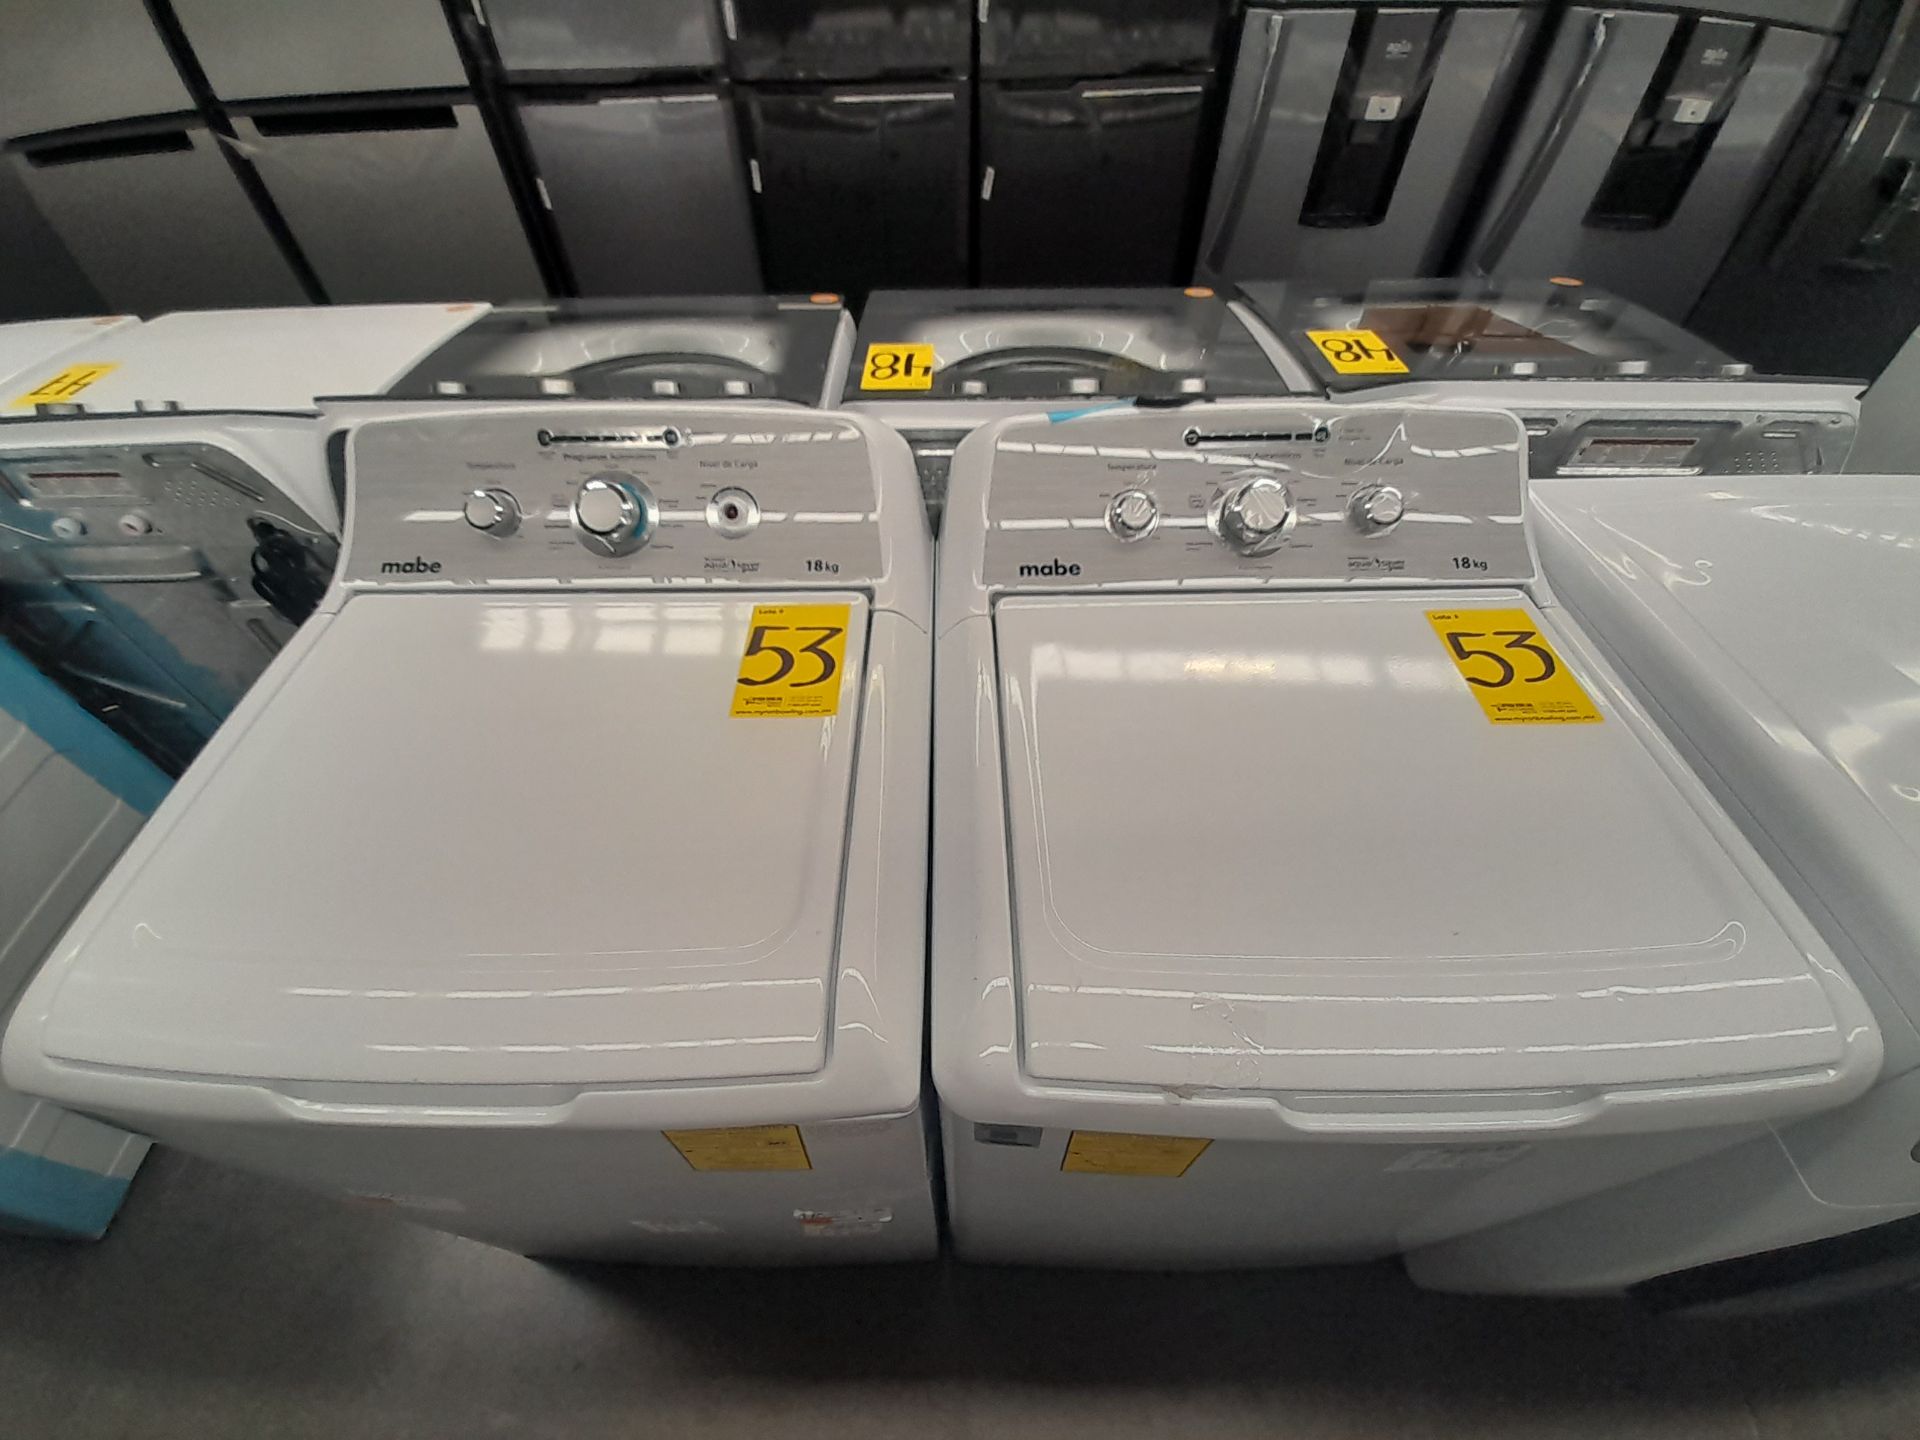 Lote de 2 lavadoras contiene: 1 lavadora de 18 KG, Marca MABE, Modelo LMA78113CBAB01, Serie S76416, - Image 4 of 6